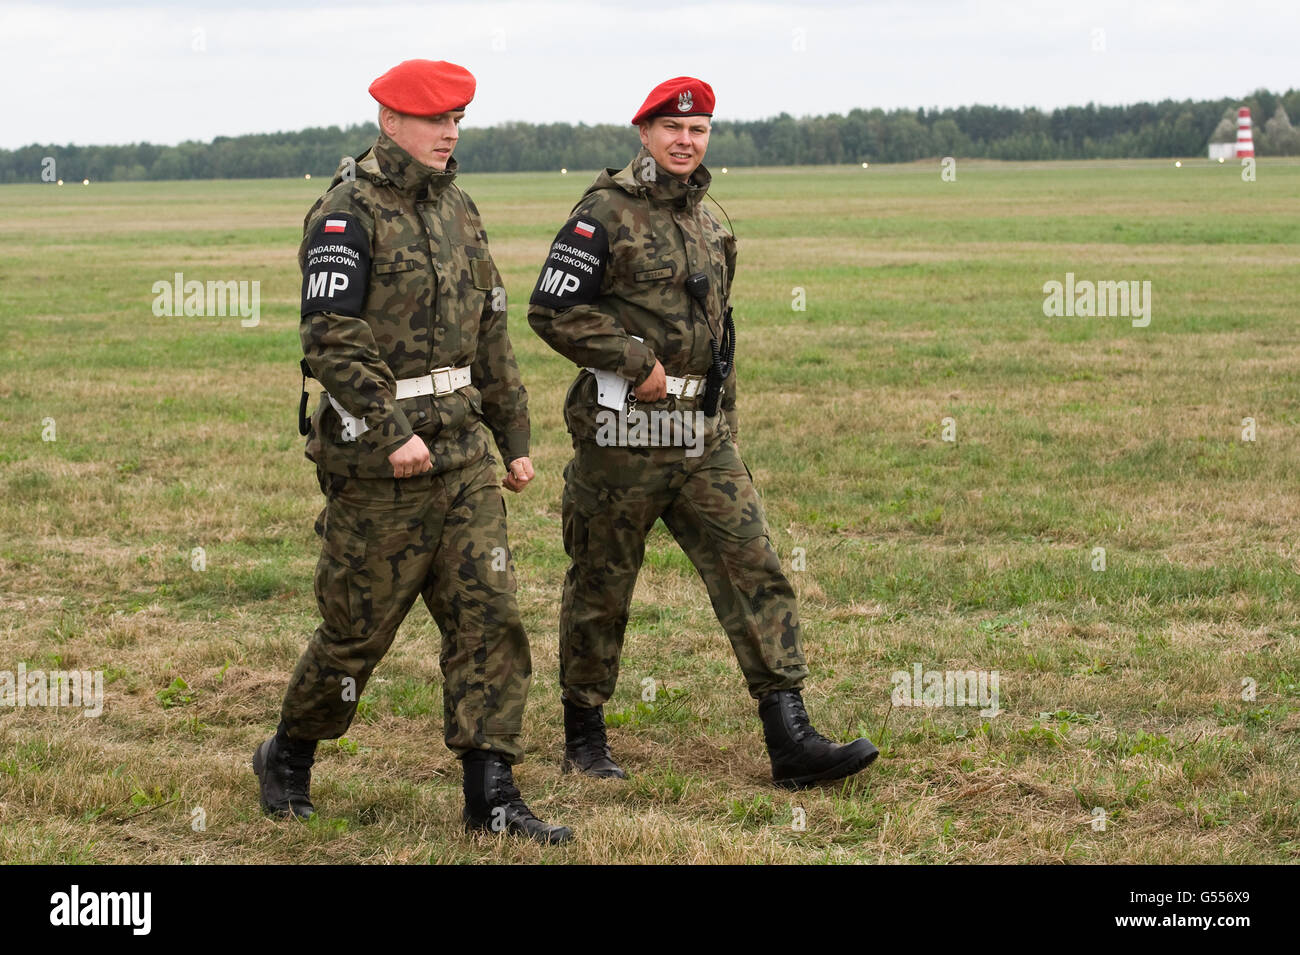 Lask, Polonia. 26 Settembre, 2015. Due soldati del polacco della polizia militare nella foto al trentaduesimo Air Base in Lask, Polonia. ©Marcin Ro Foto Stock